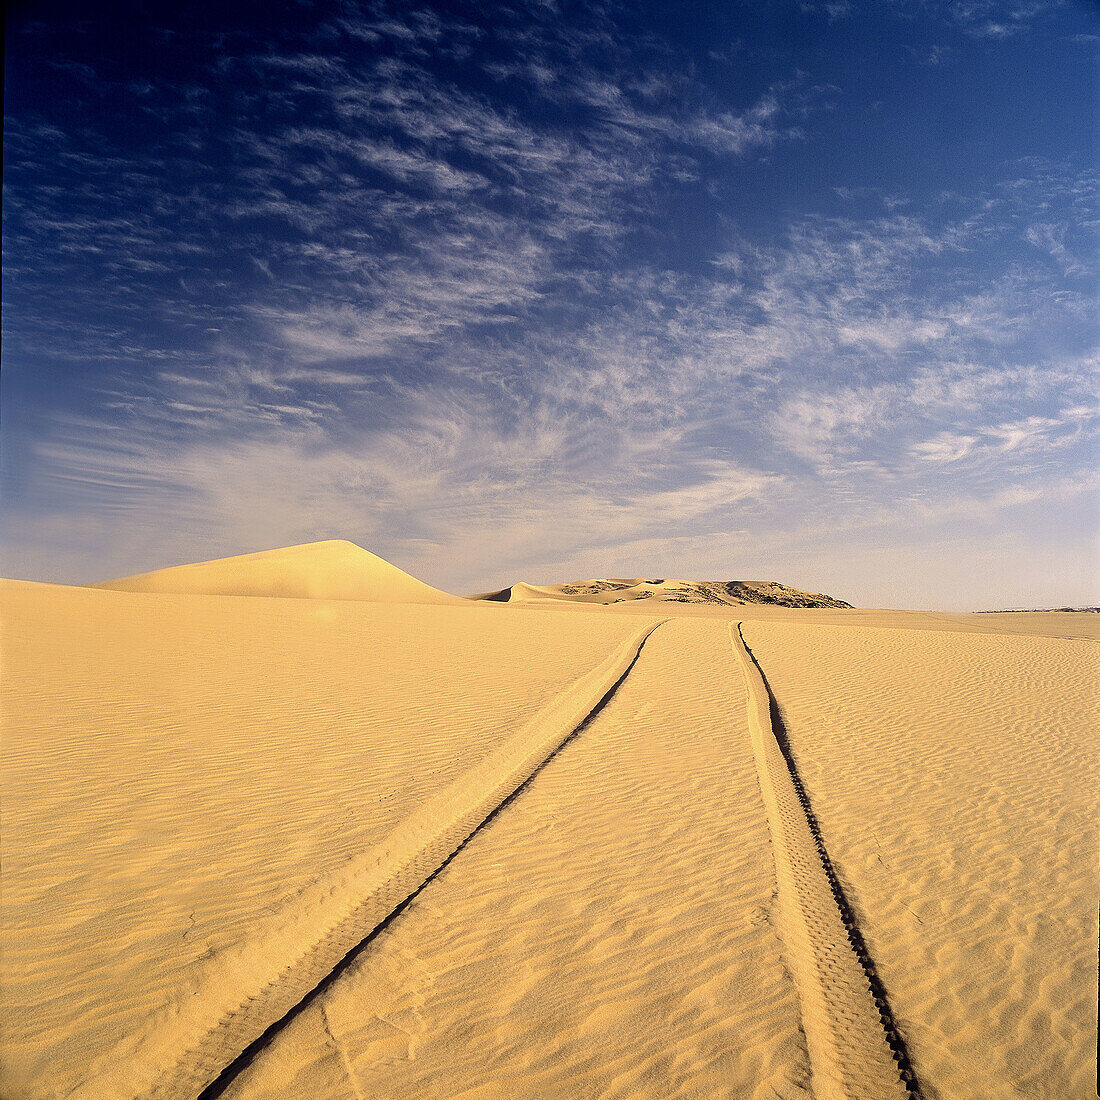 Ténéré desert, Sahara. Niger